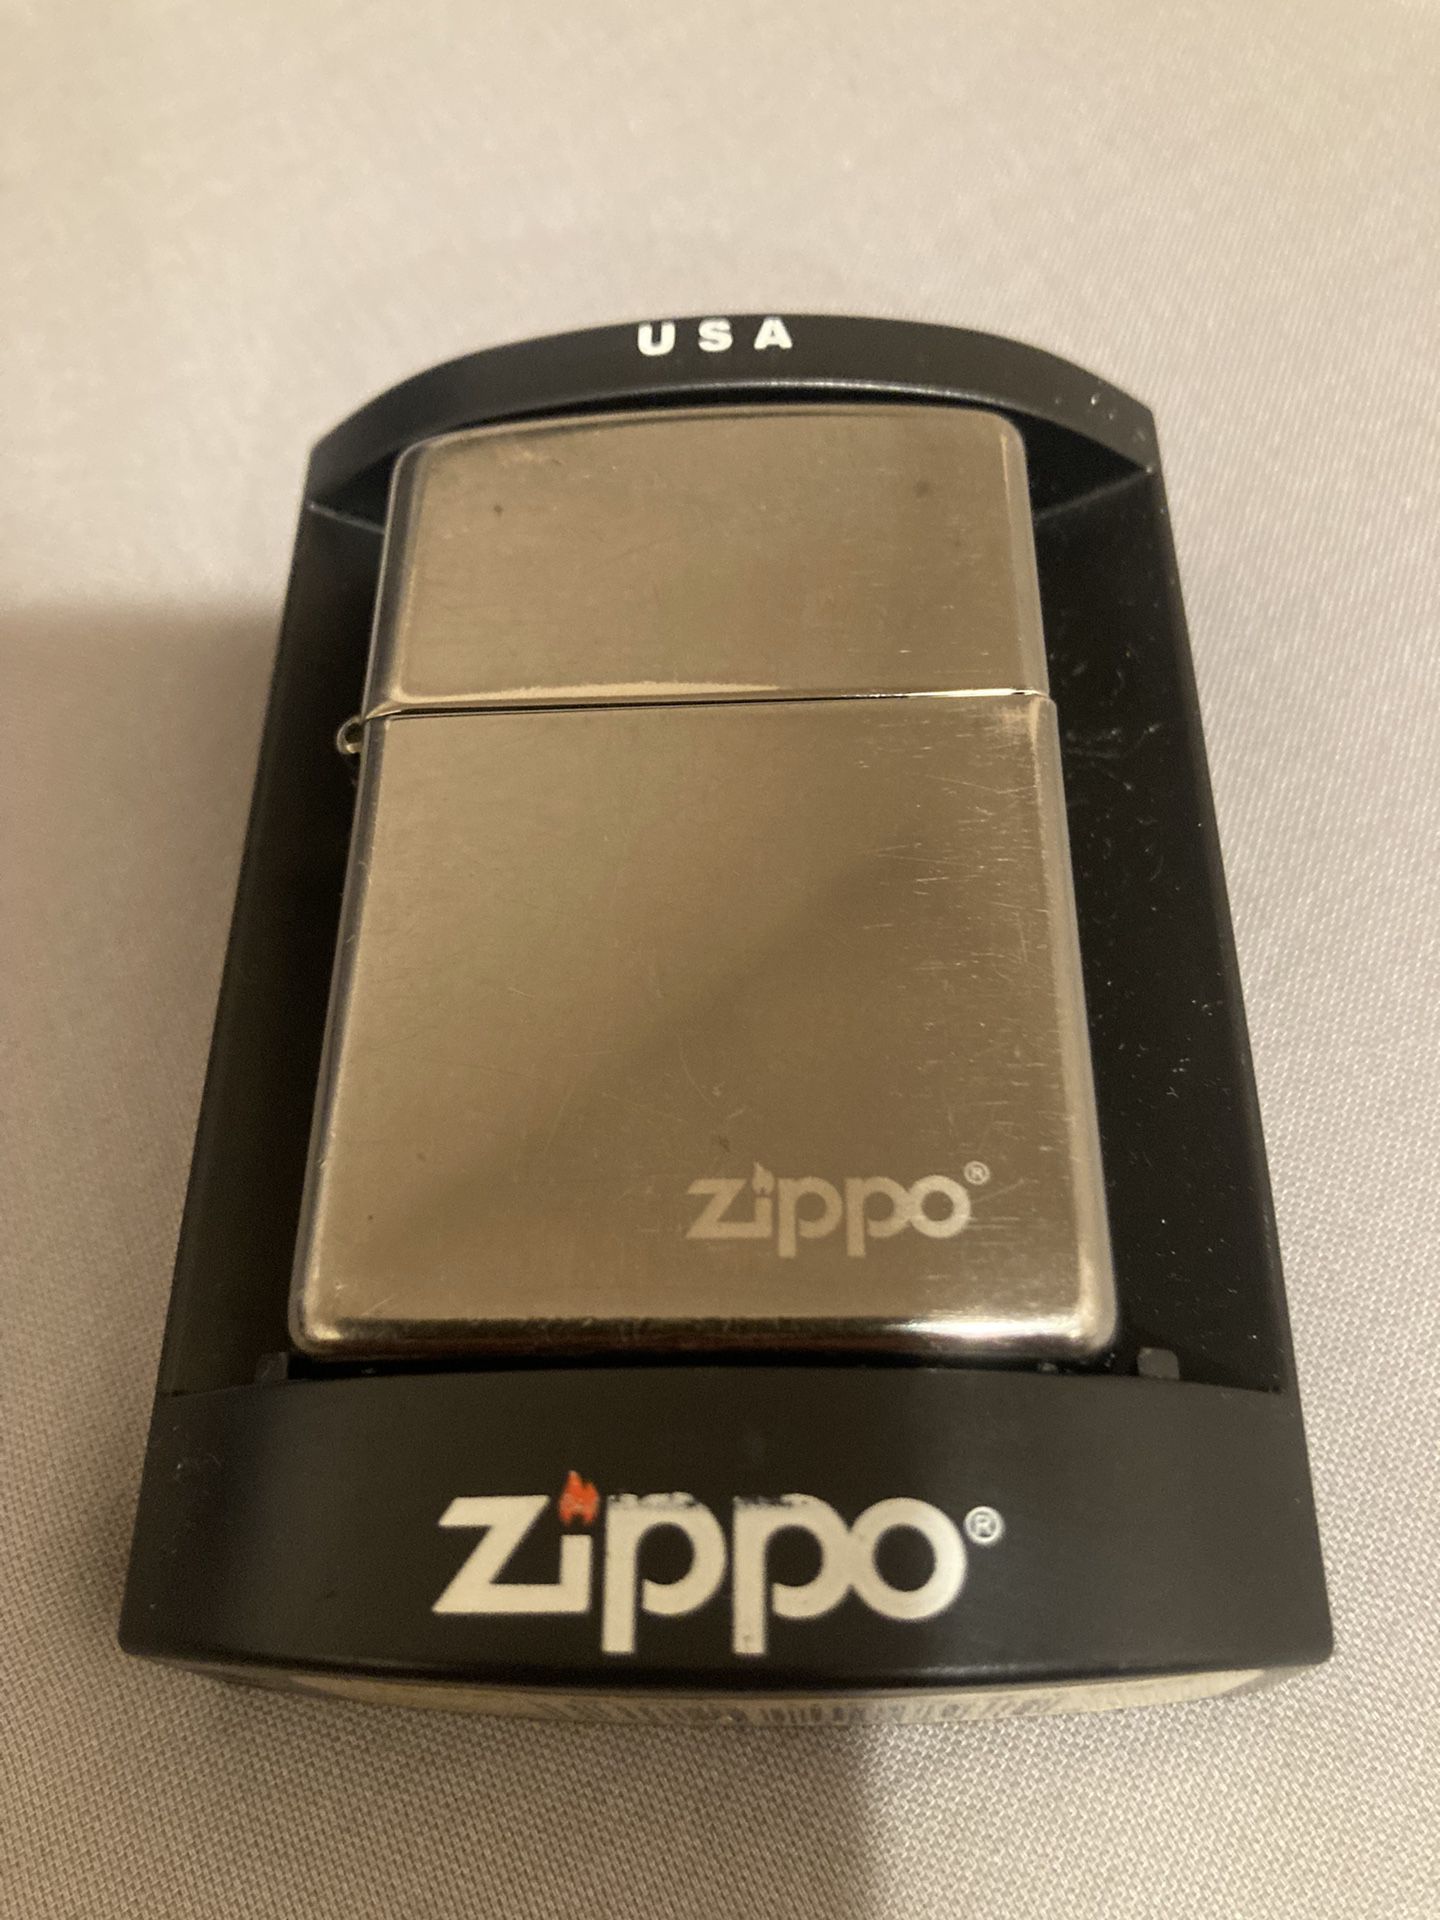 Zippo Lighter #6